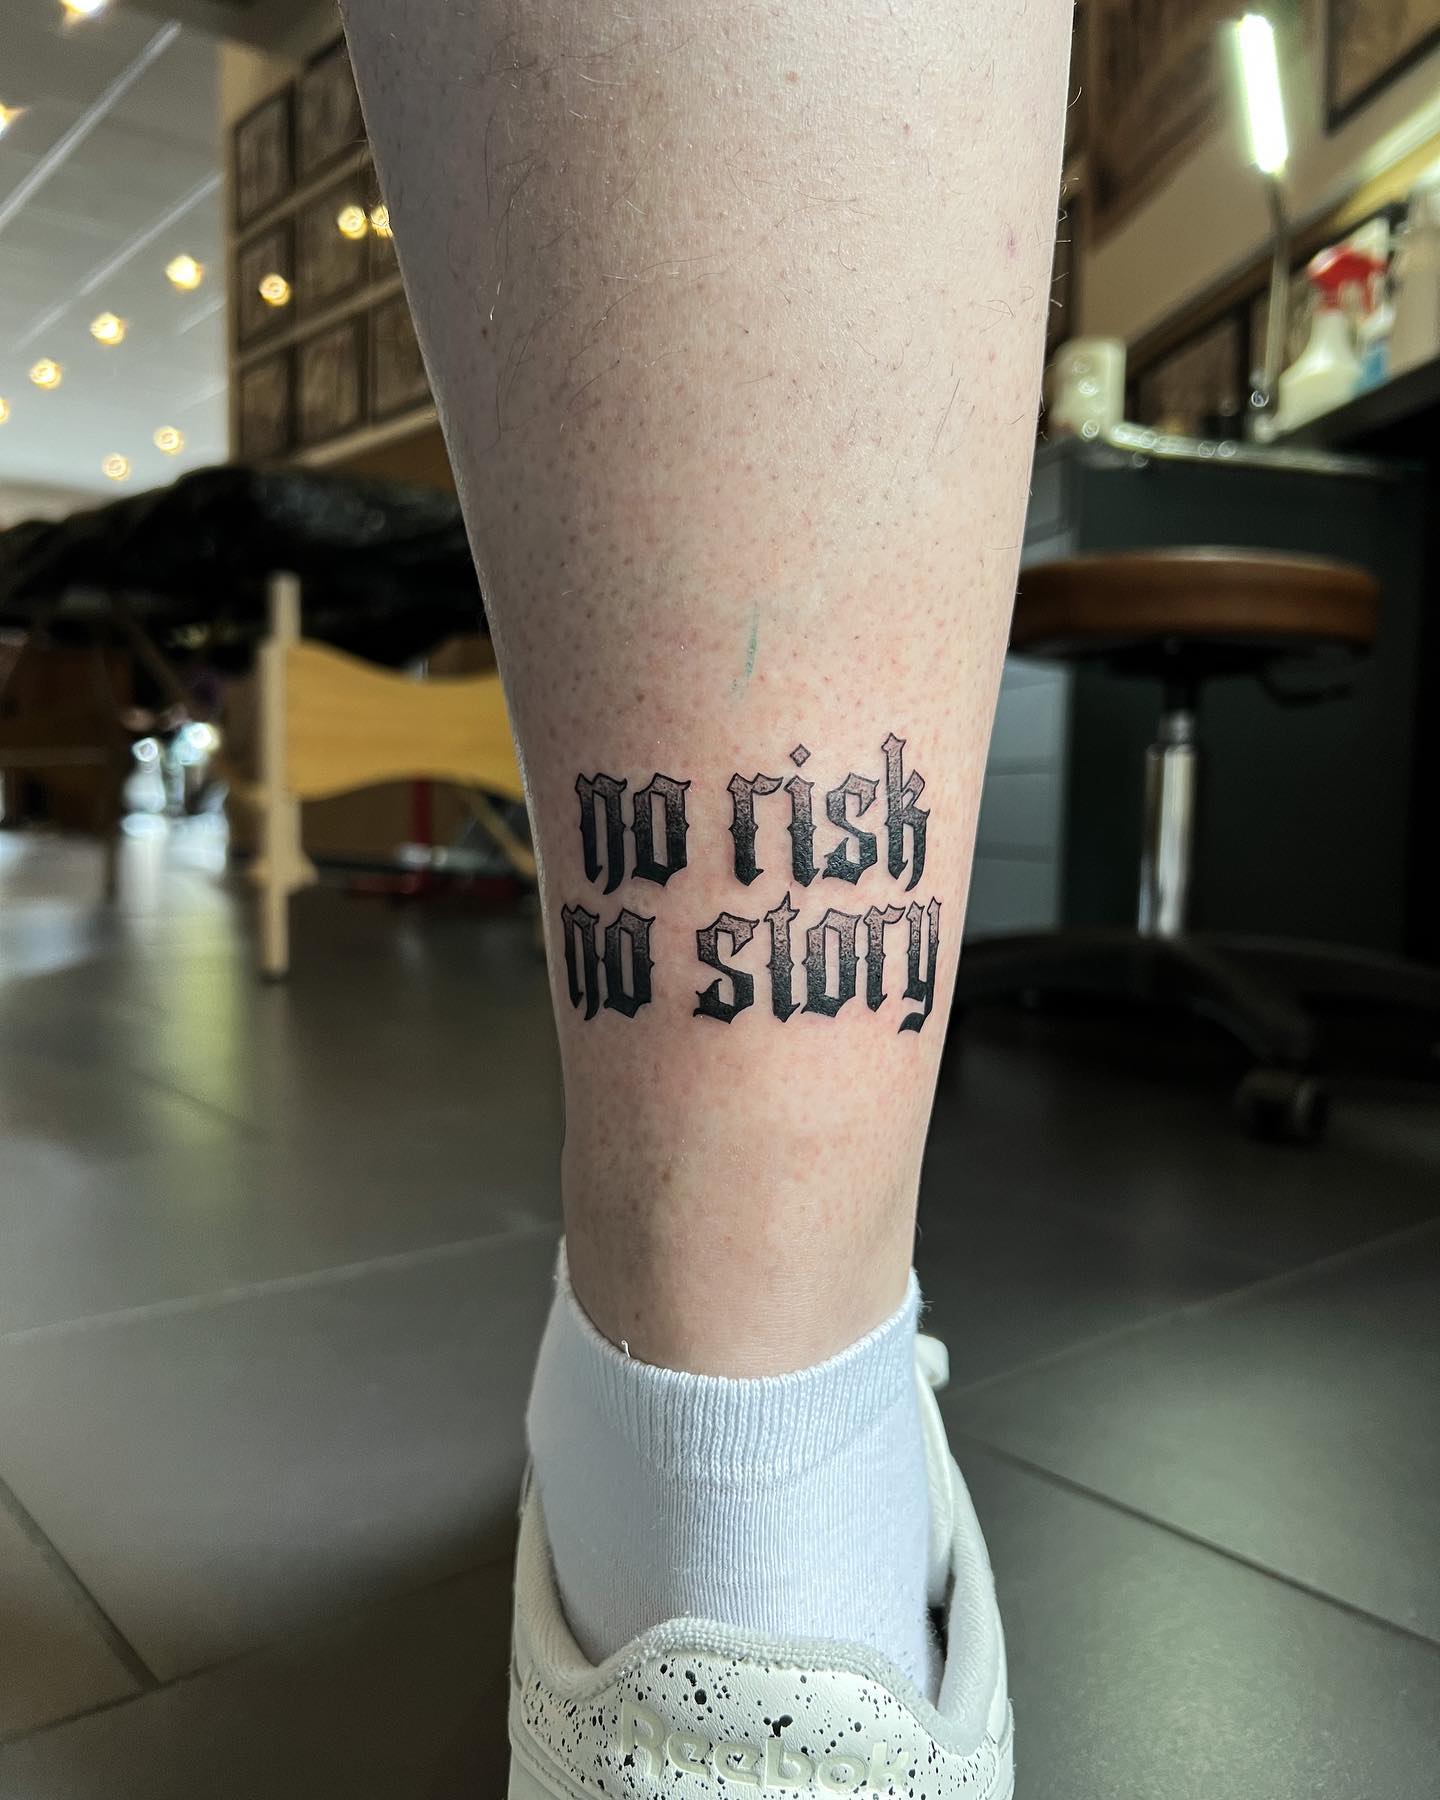 DANKE @mattes0385 
.
#norisknostory #letteringtattoo #tattoo #tattooed #tattooid